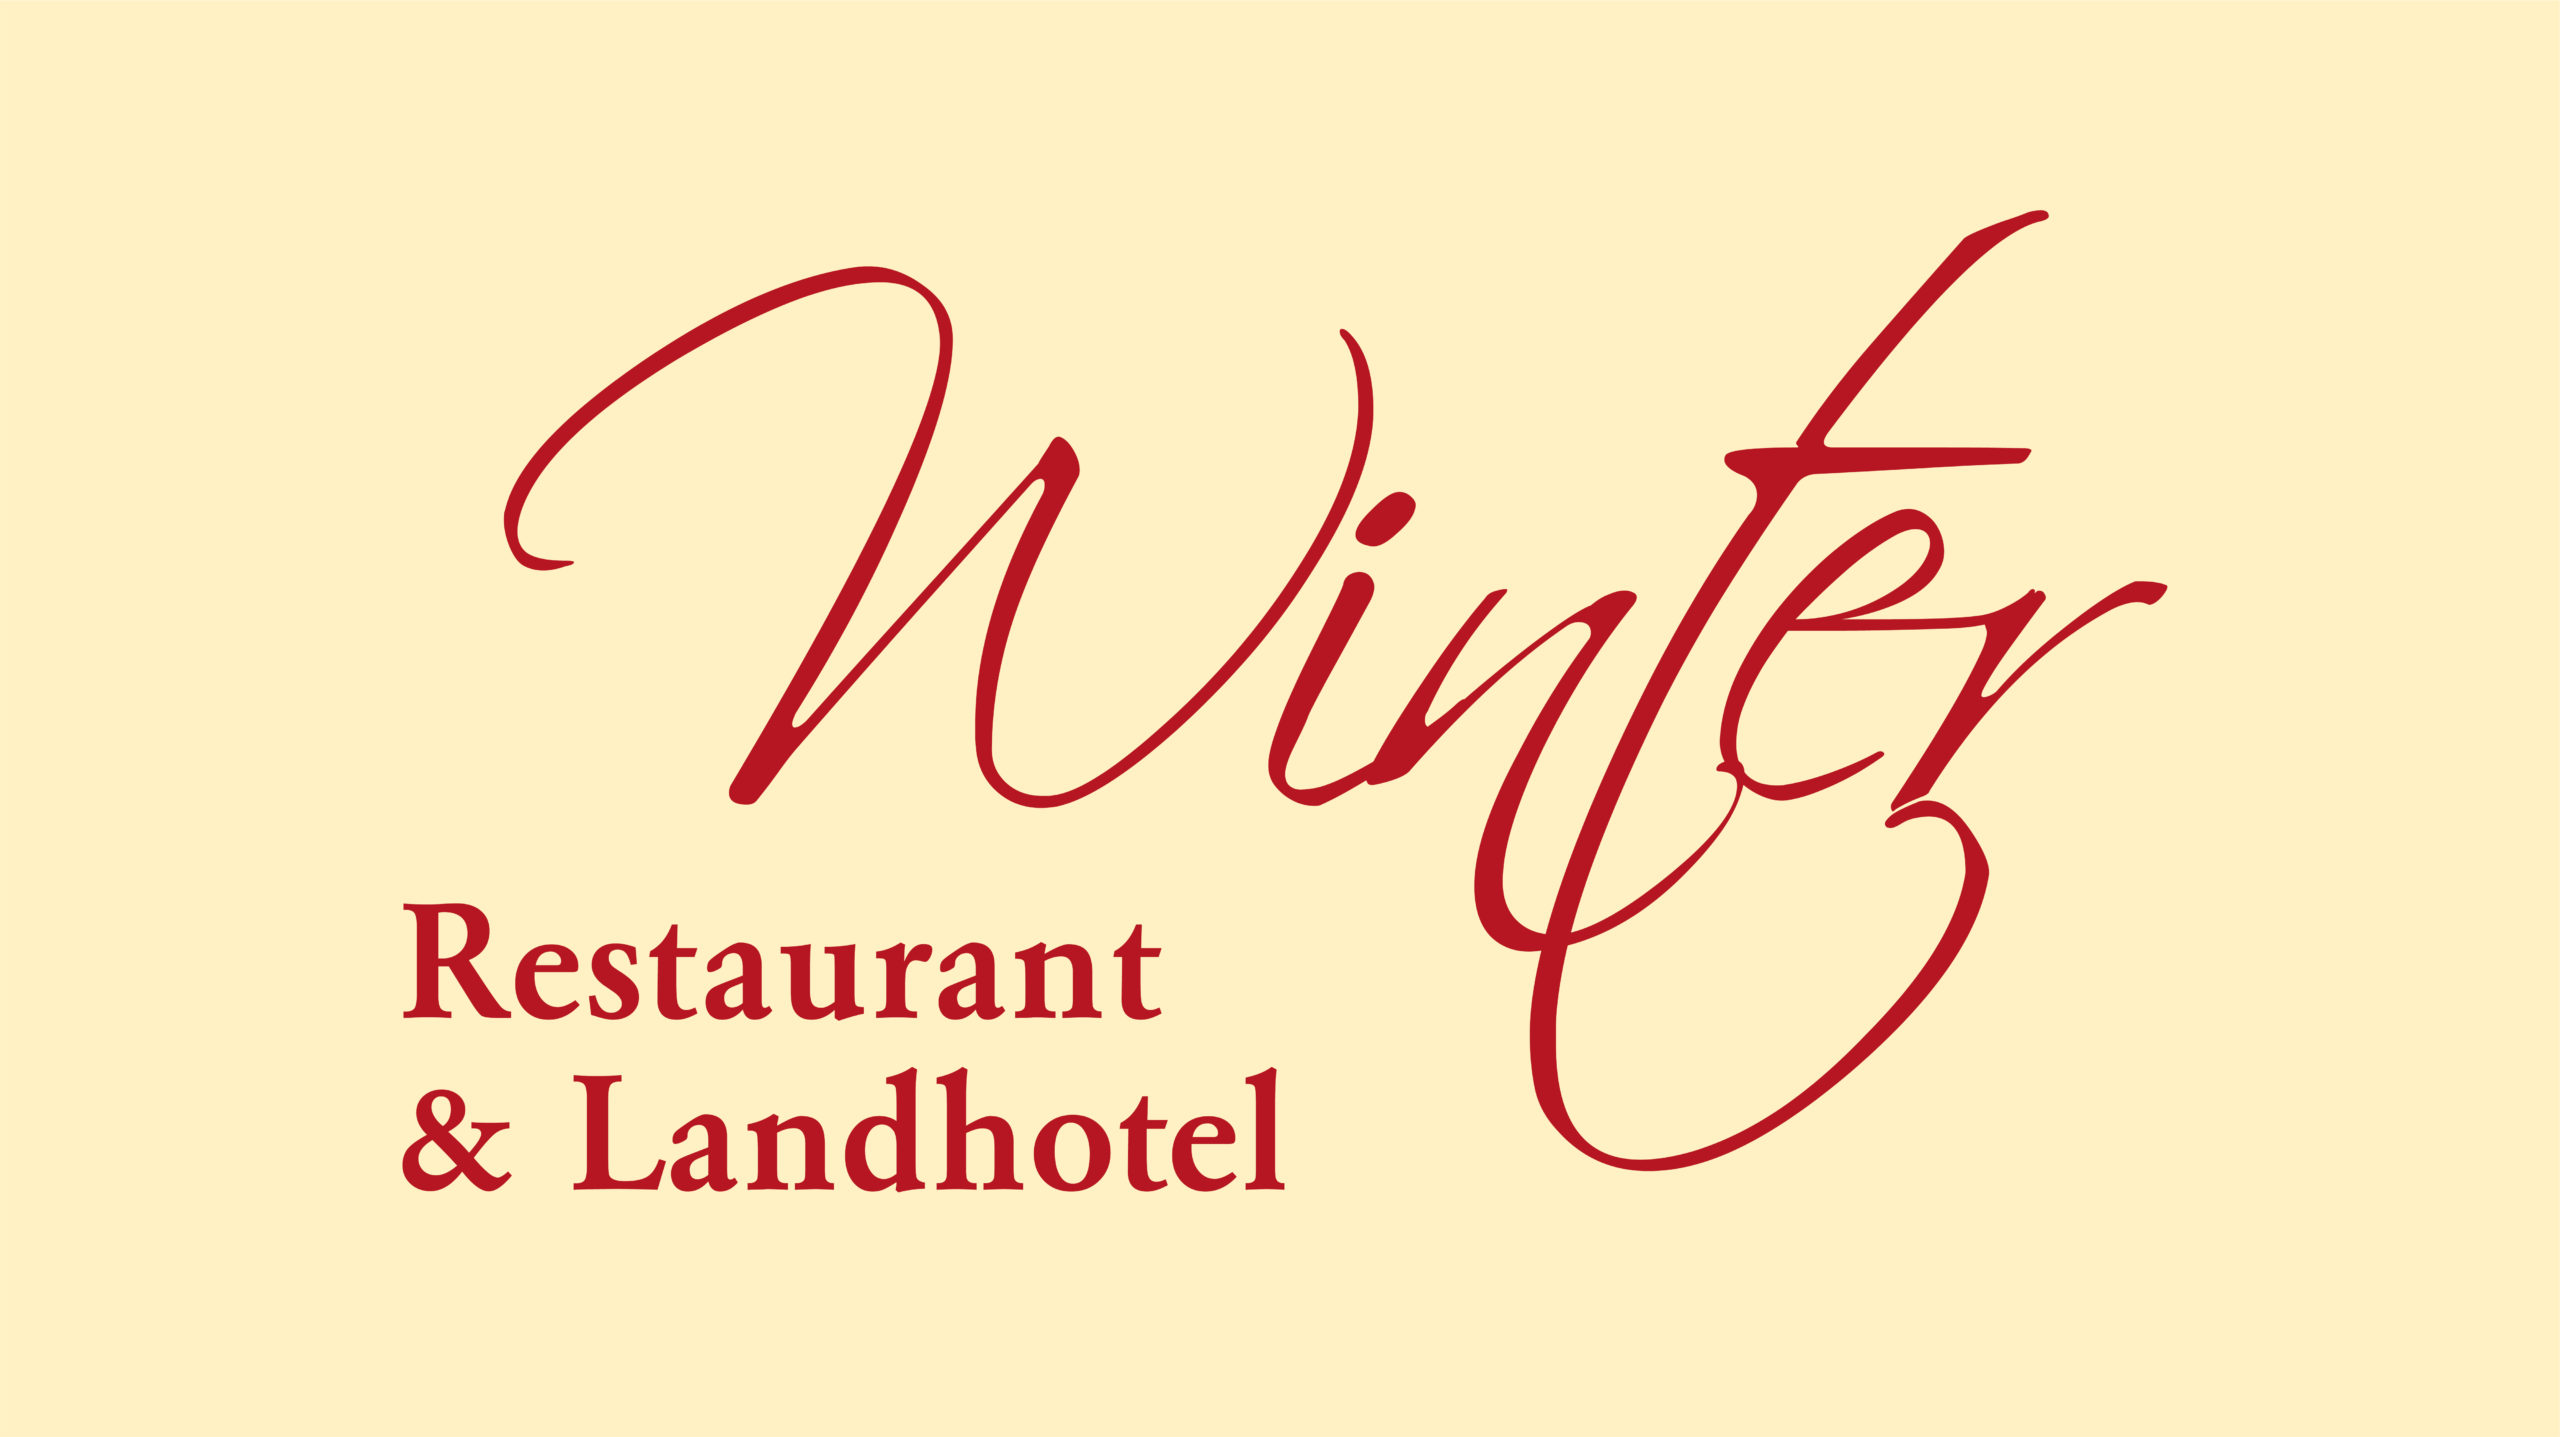 Restaurant & Landhotel Winter